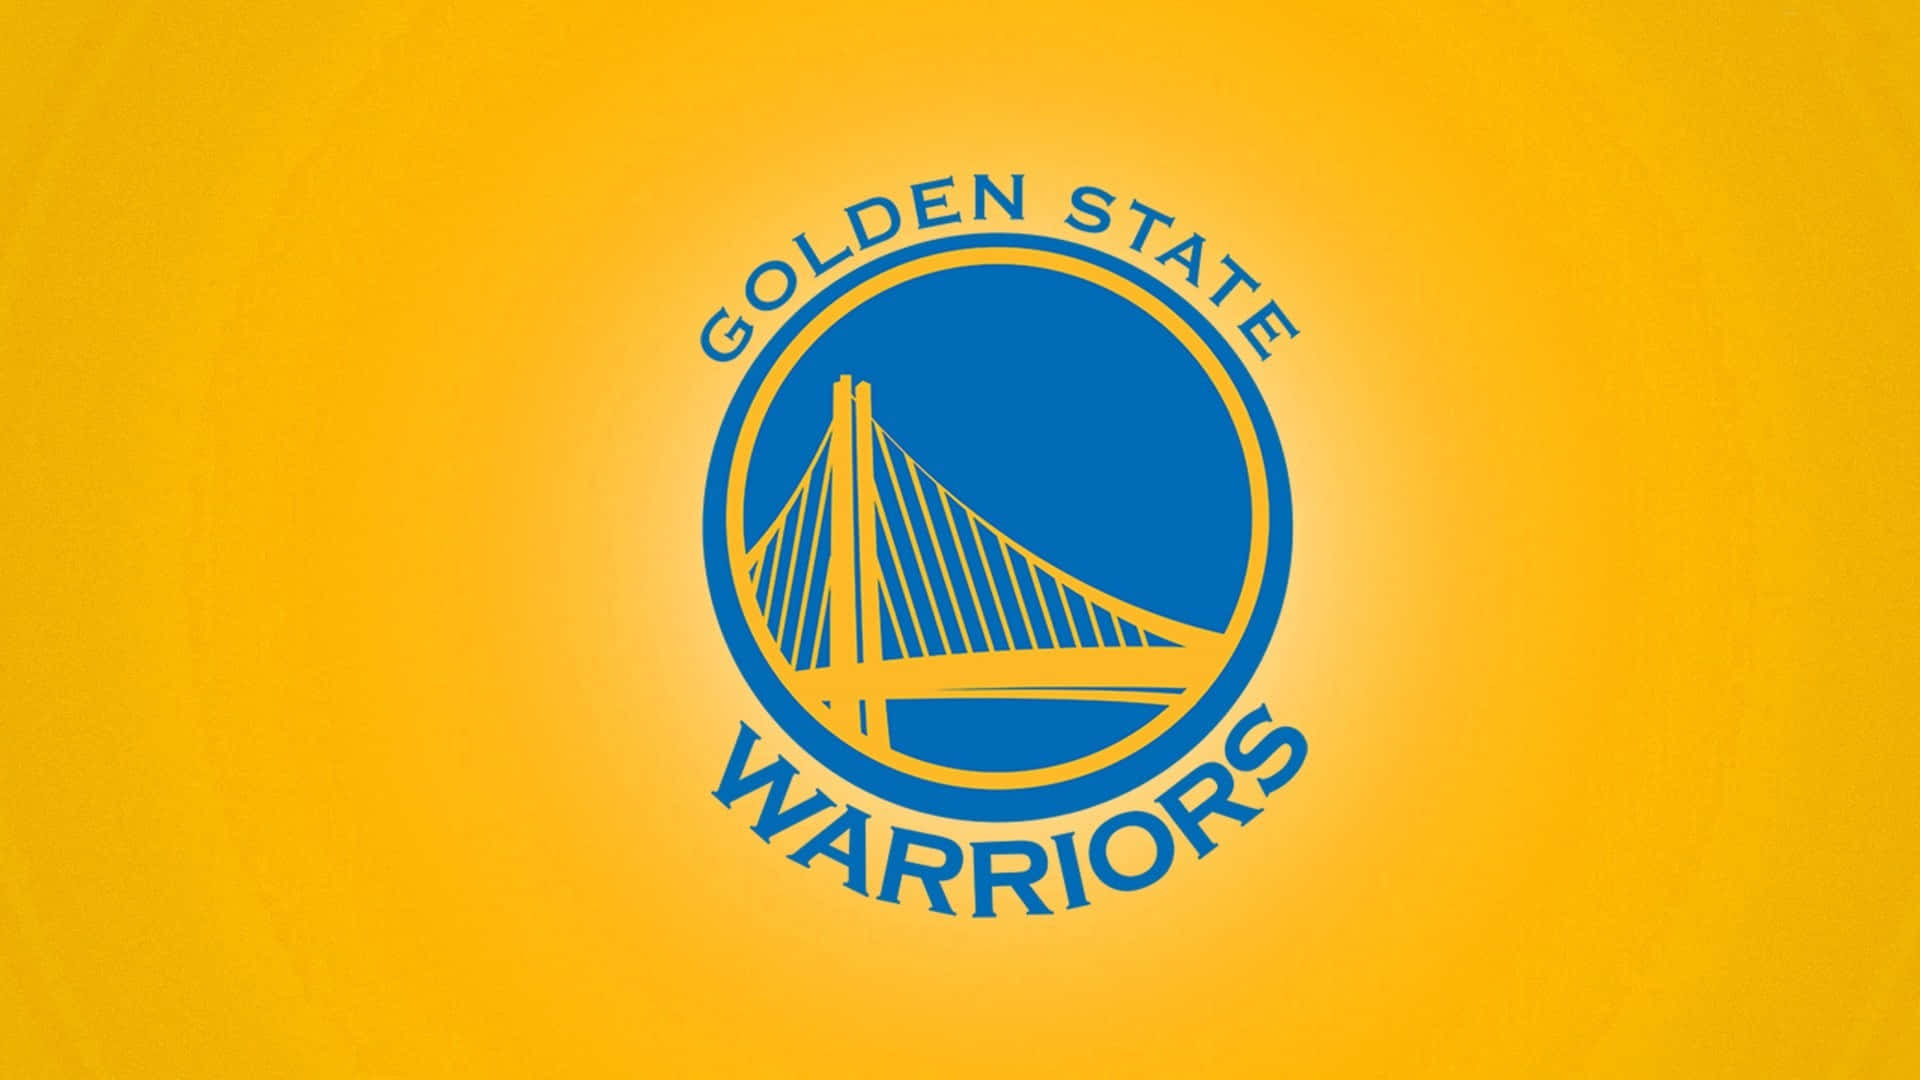 Zeigensie Ihre Unterstützung Für Die Golden State Warriors Mit Ihrem Offiziellen Logo. Wallpaper